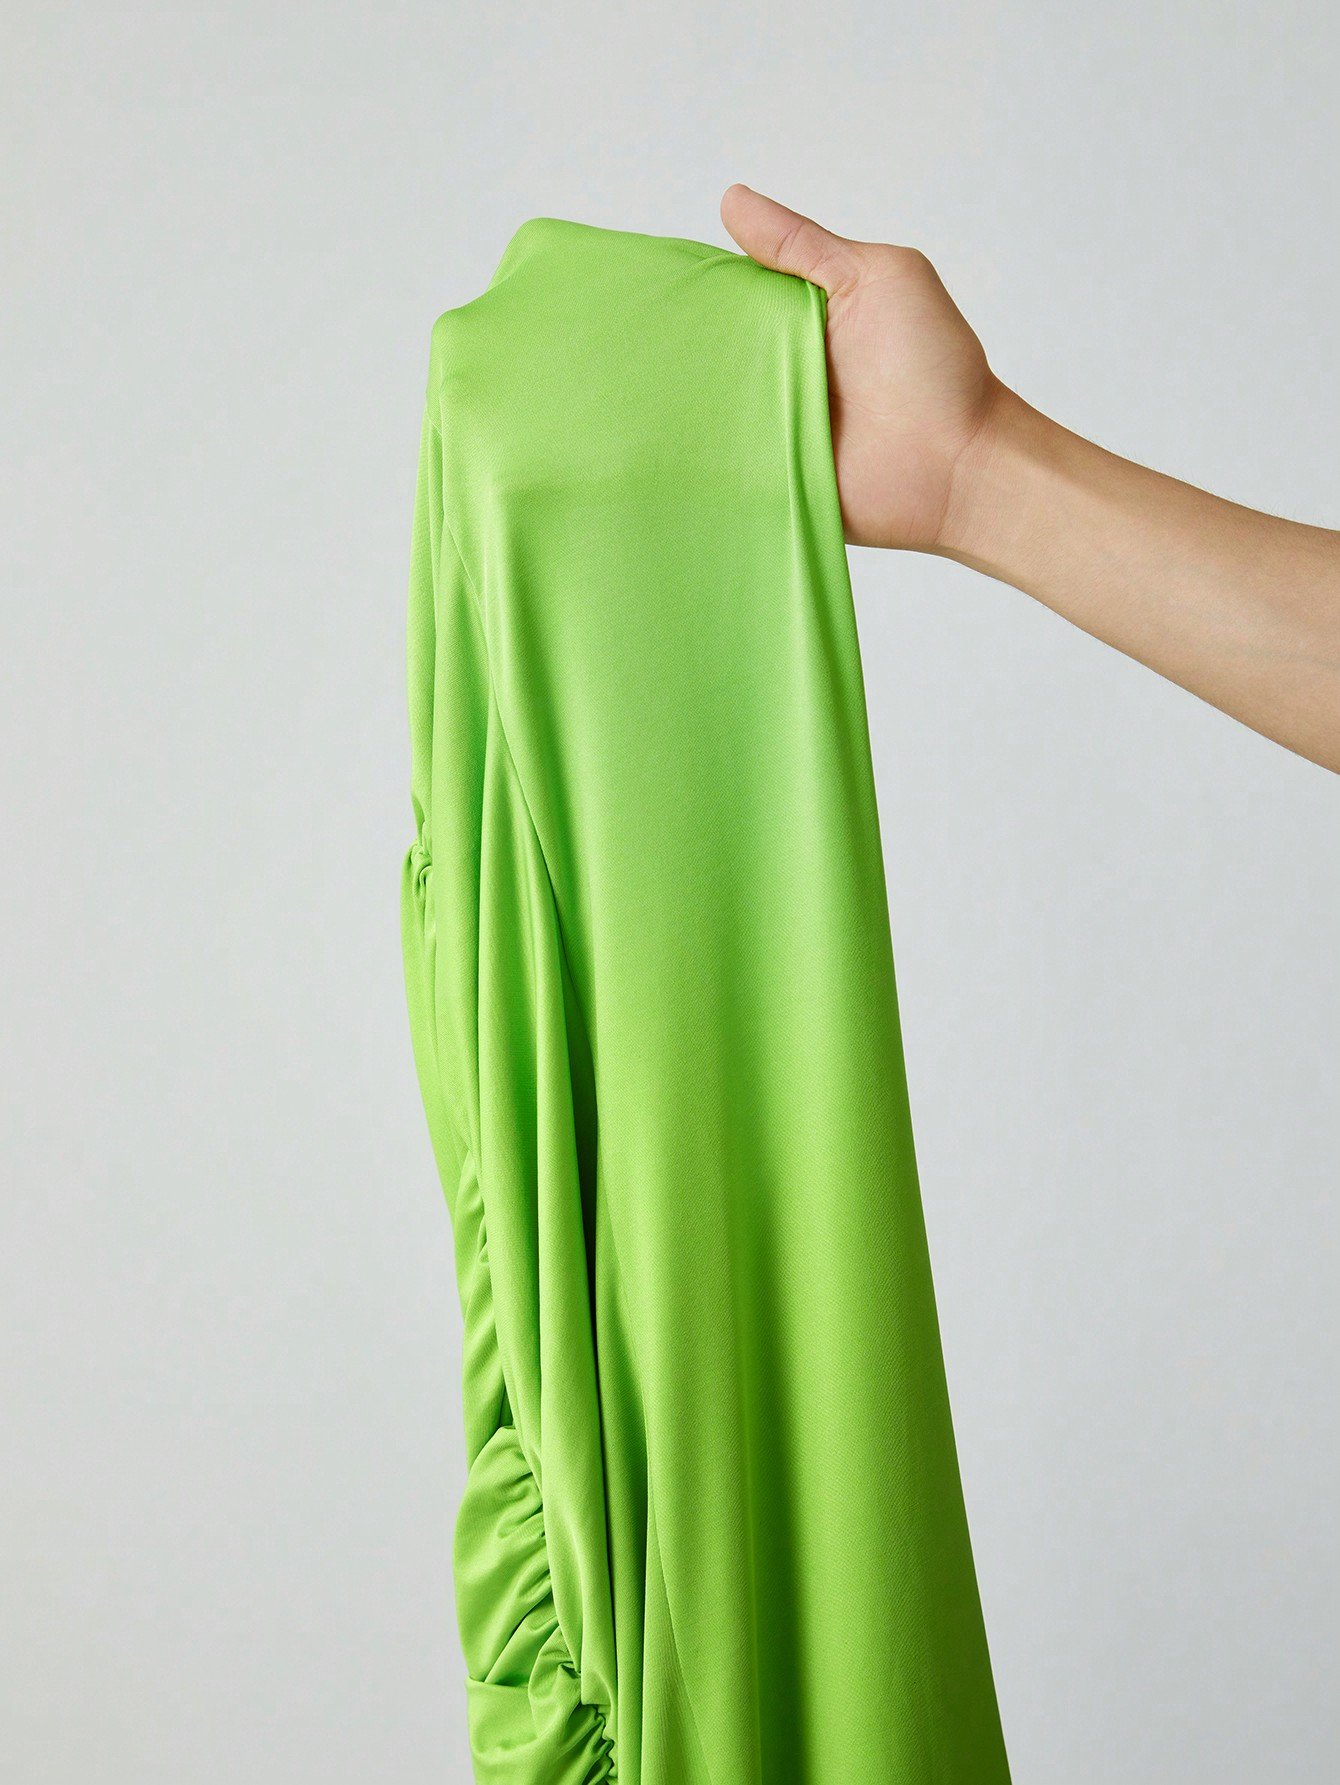 女性用グリーンラウンドネック長袖ドレス、シアーメッシュスパイスとプリーツスリムフィットデザインを使ったデザイン。